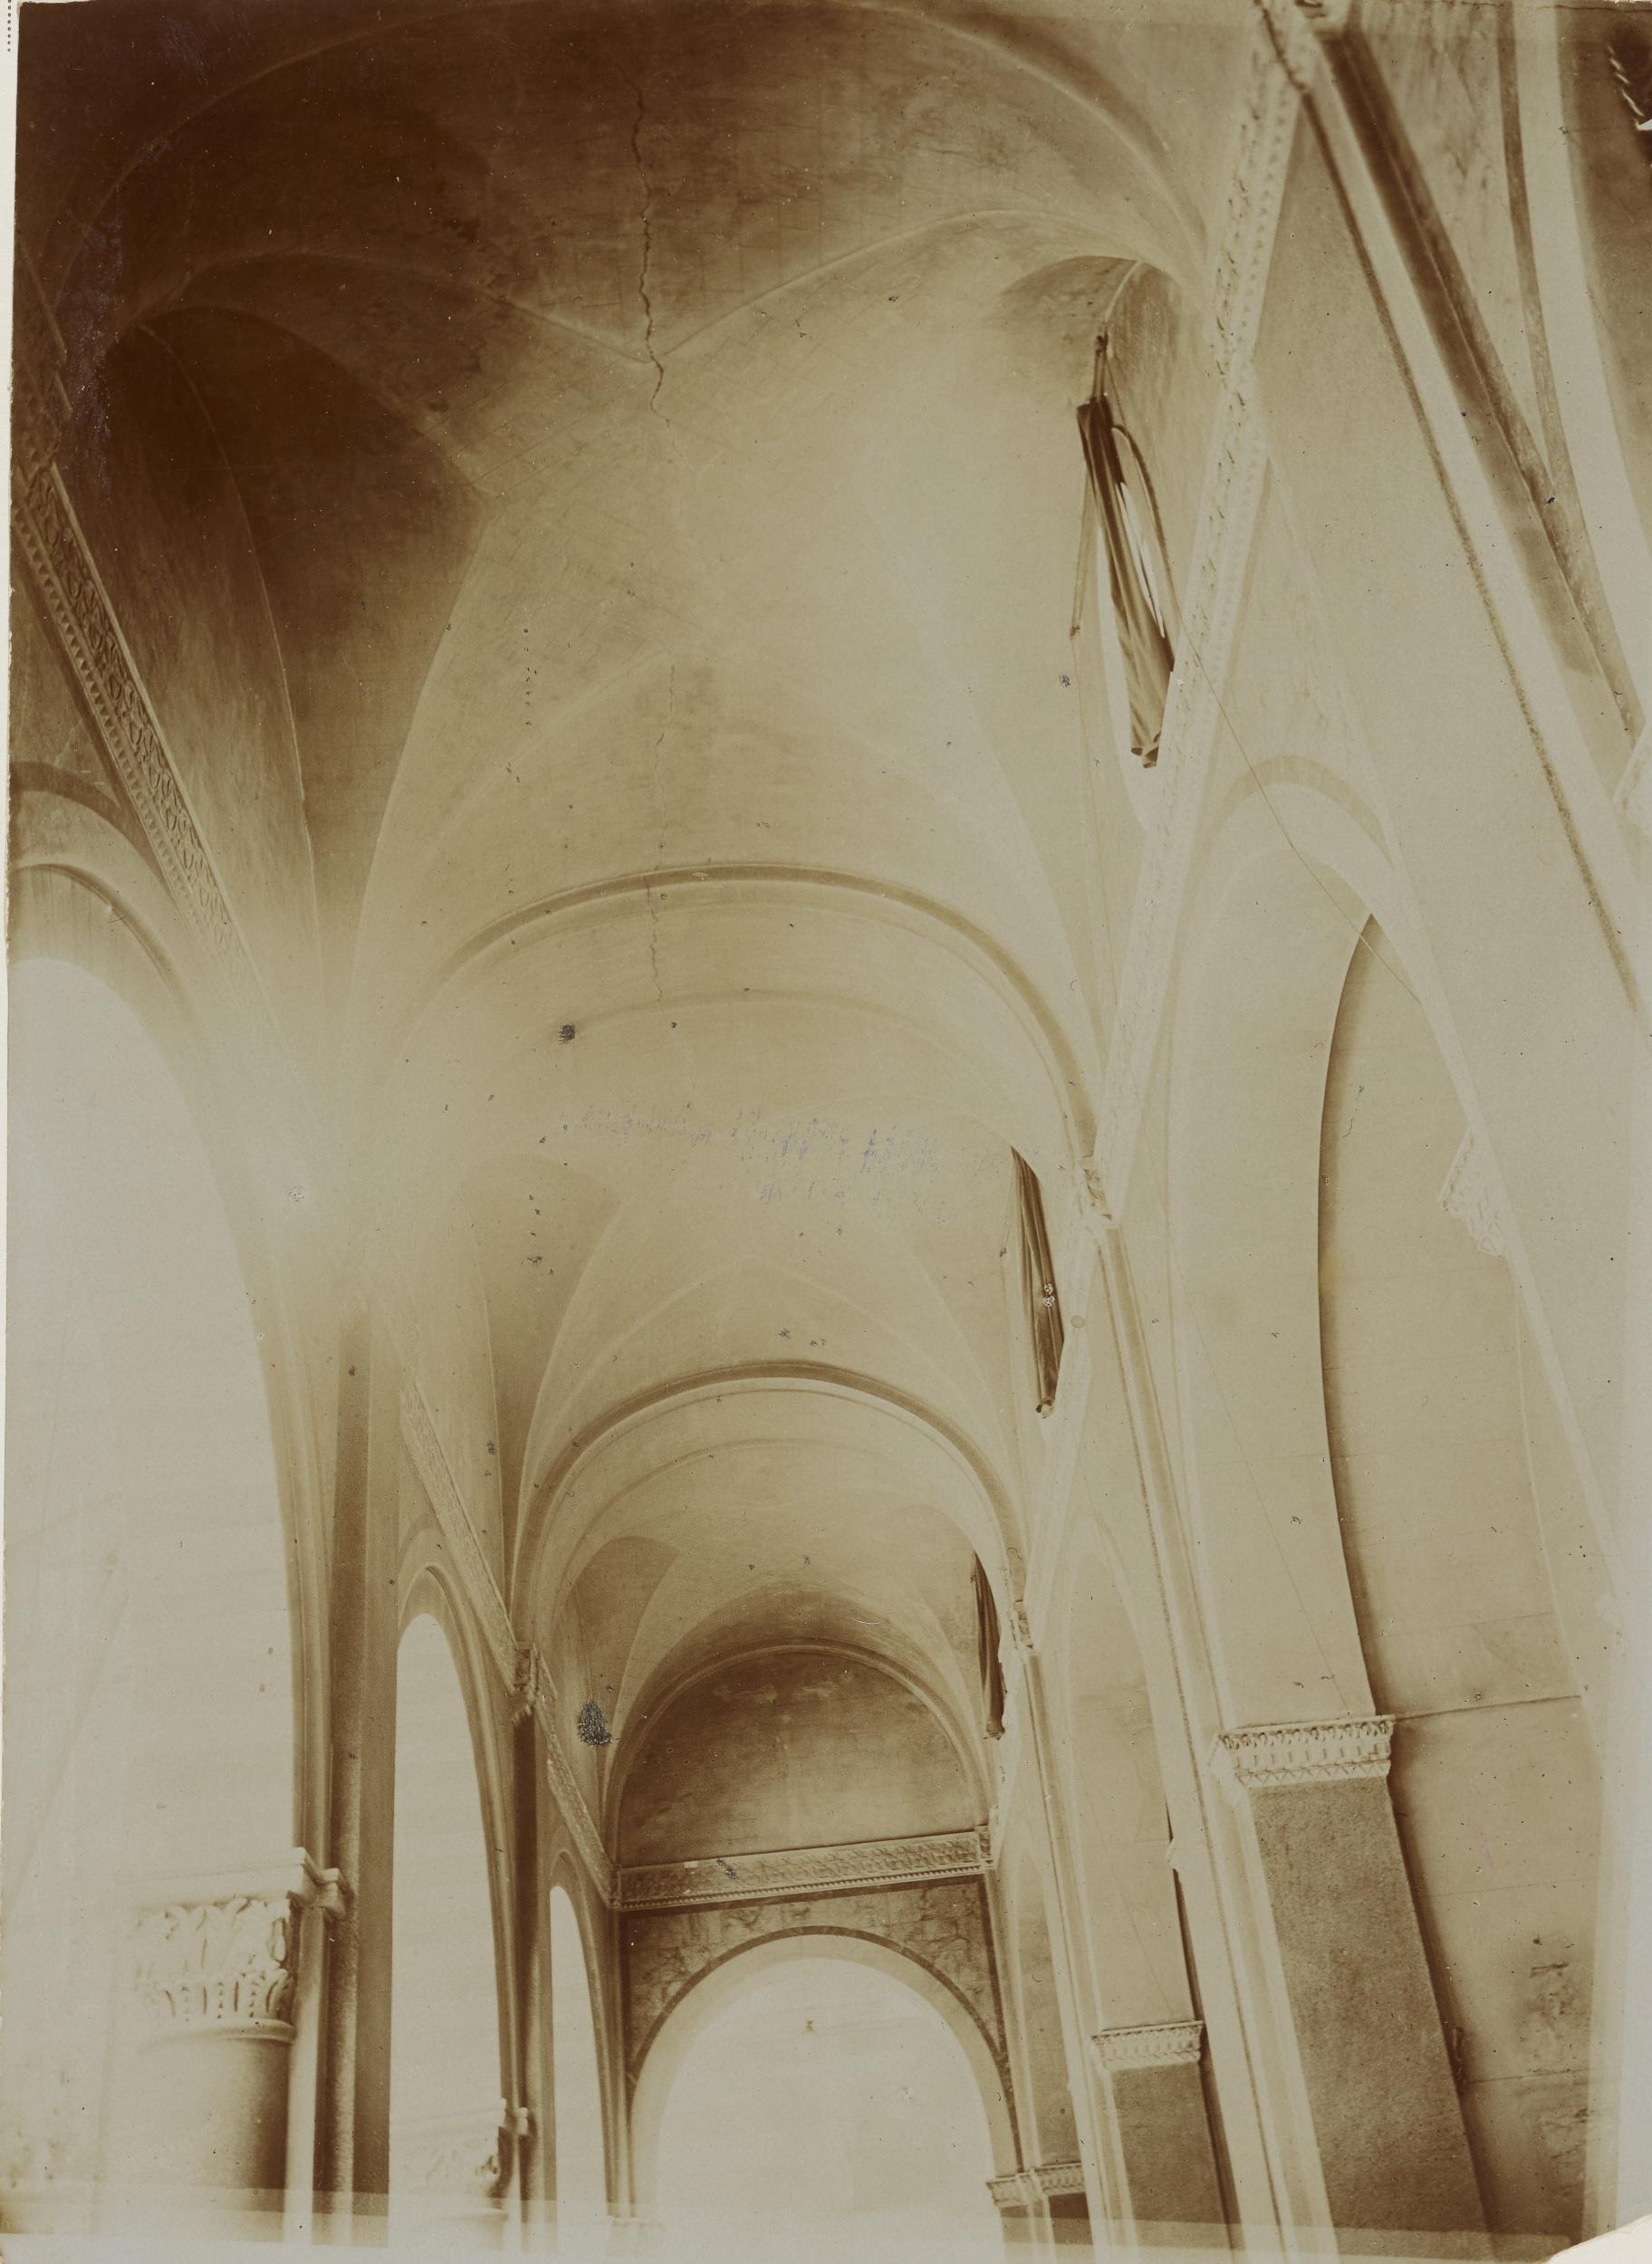 Fotografo non identificato, Conversano - Cattedrale, interno, navata centrale, dopo incendio del 1911, 1901-1910, aristotipo, MPI155336